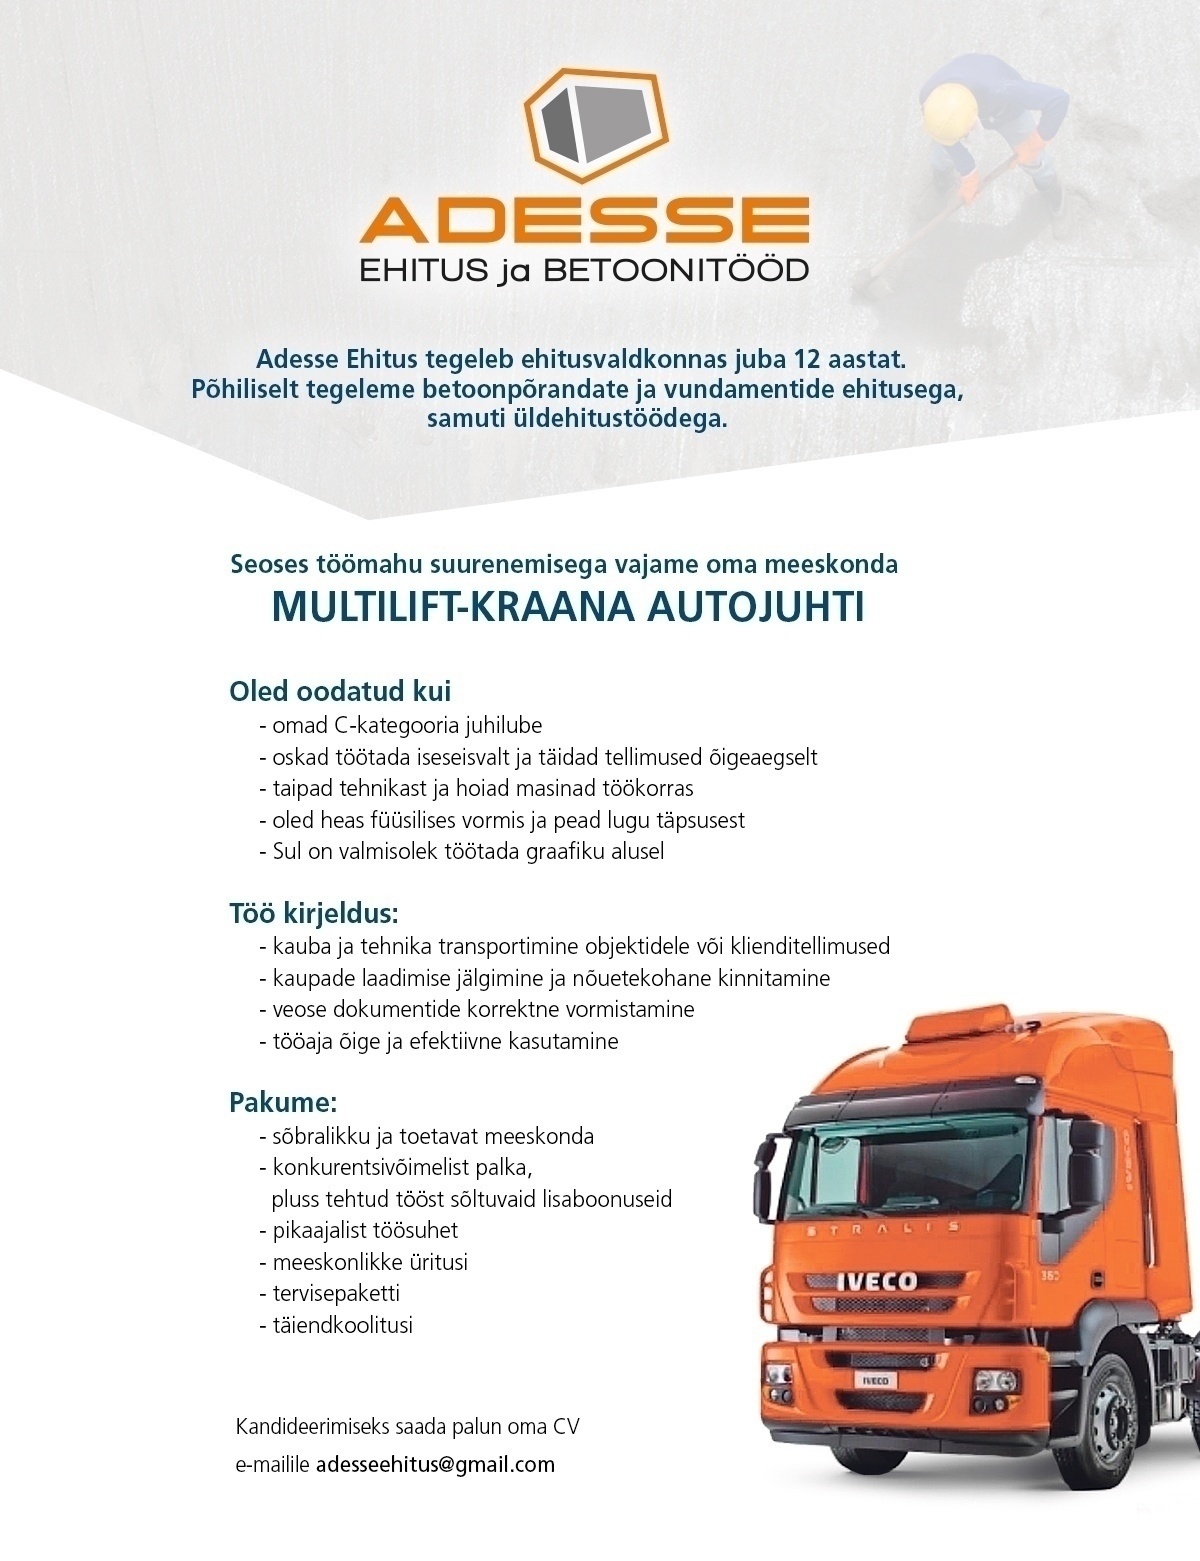 ADESSE EHITUS OÜ Multilift - kraana autojuht